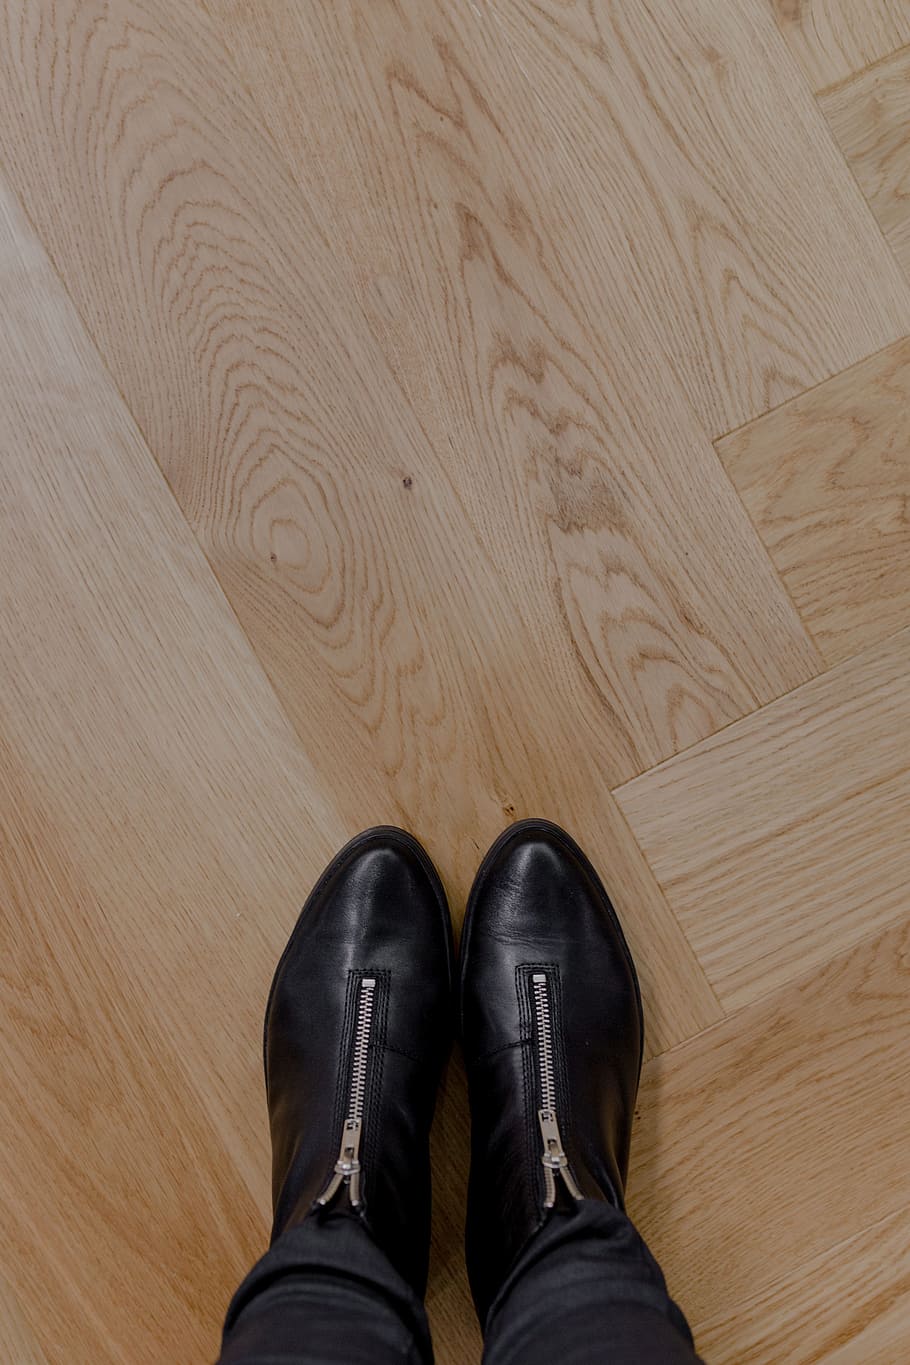 Beautiful oak floor, oak parquet, low section, shoe, human leg, HD wallpaper